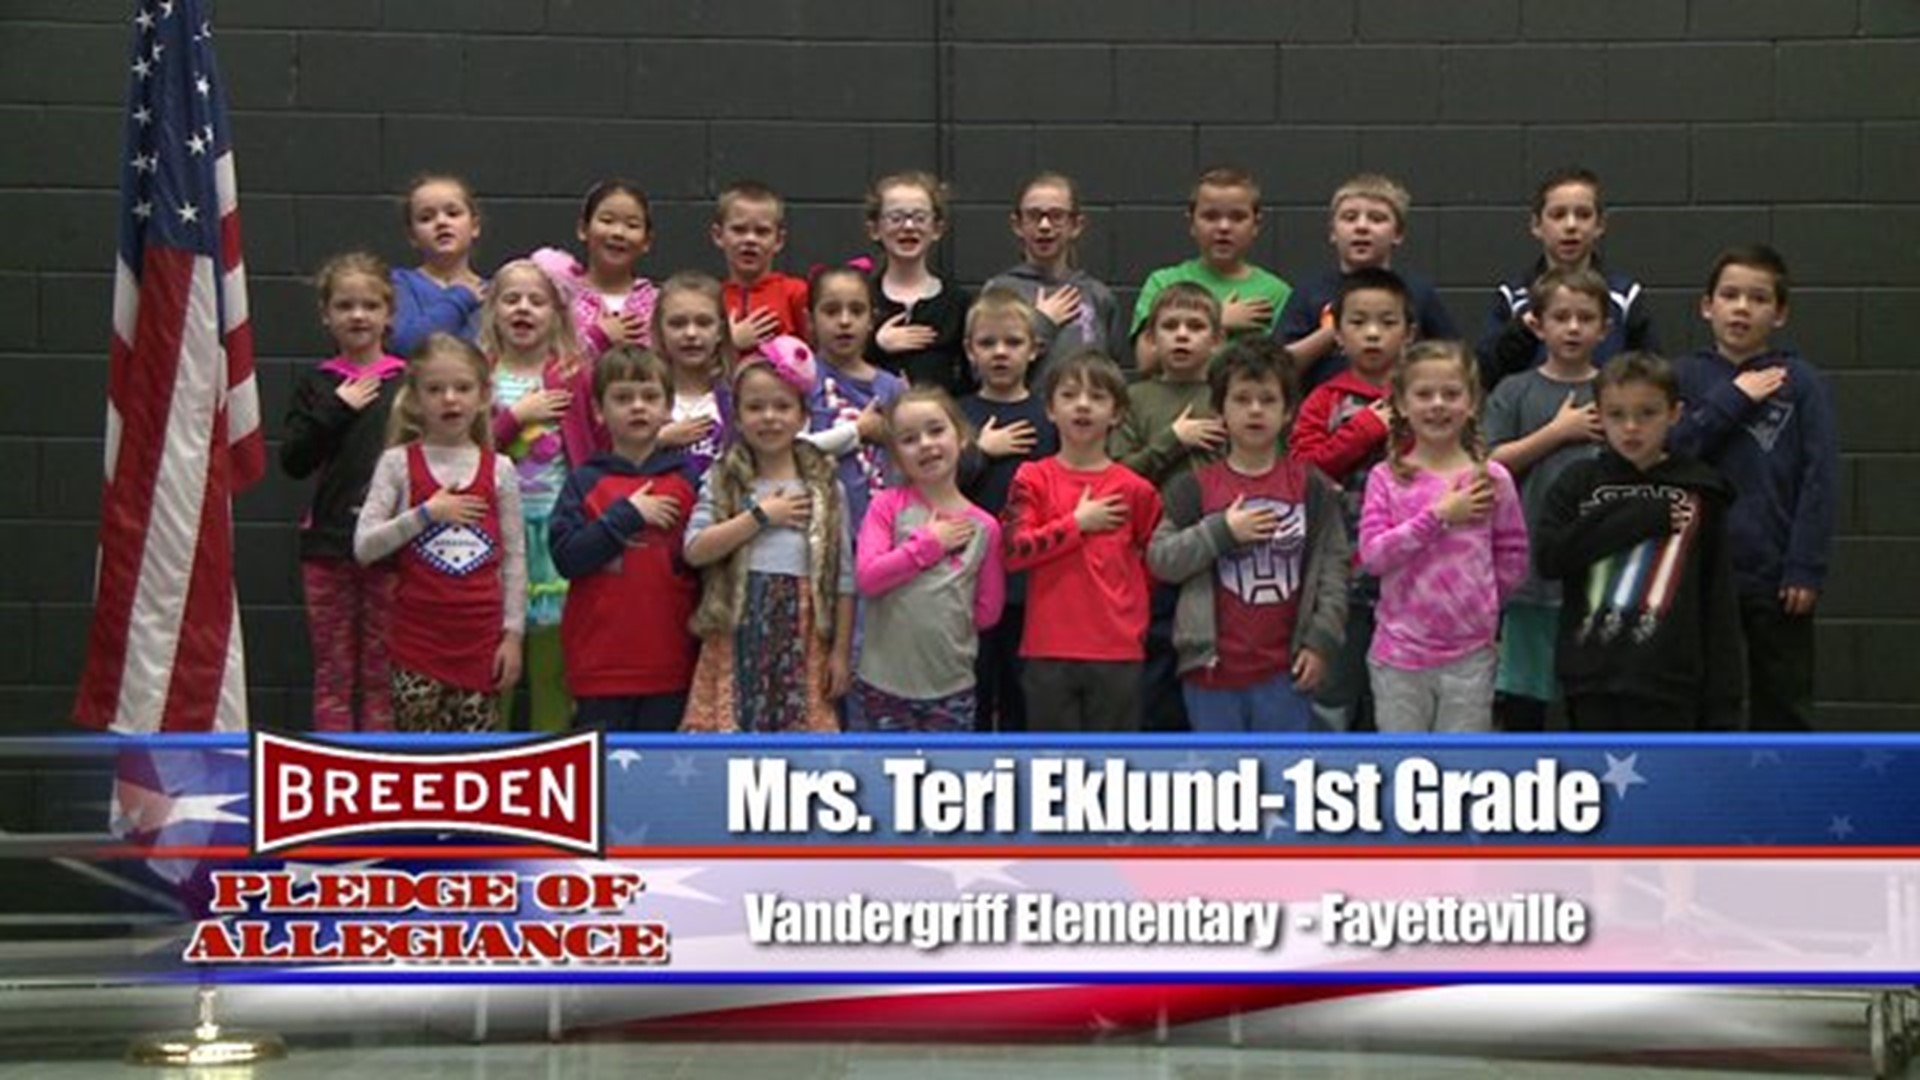 Vandergriff Elementary - Fayetteville, Mrs. Eklund - First Grade